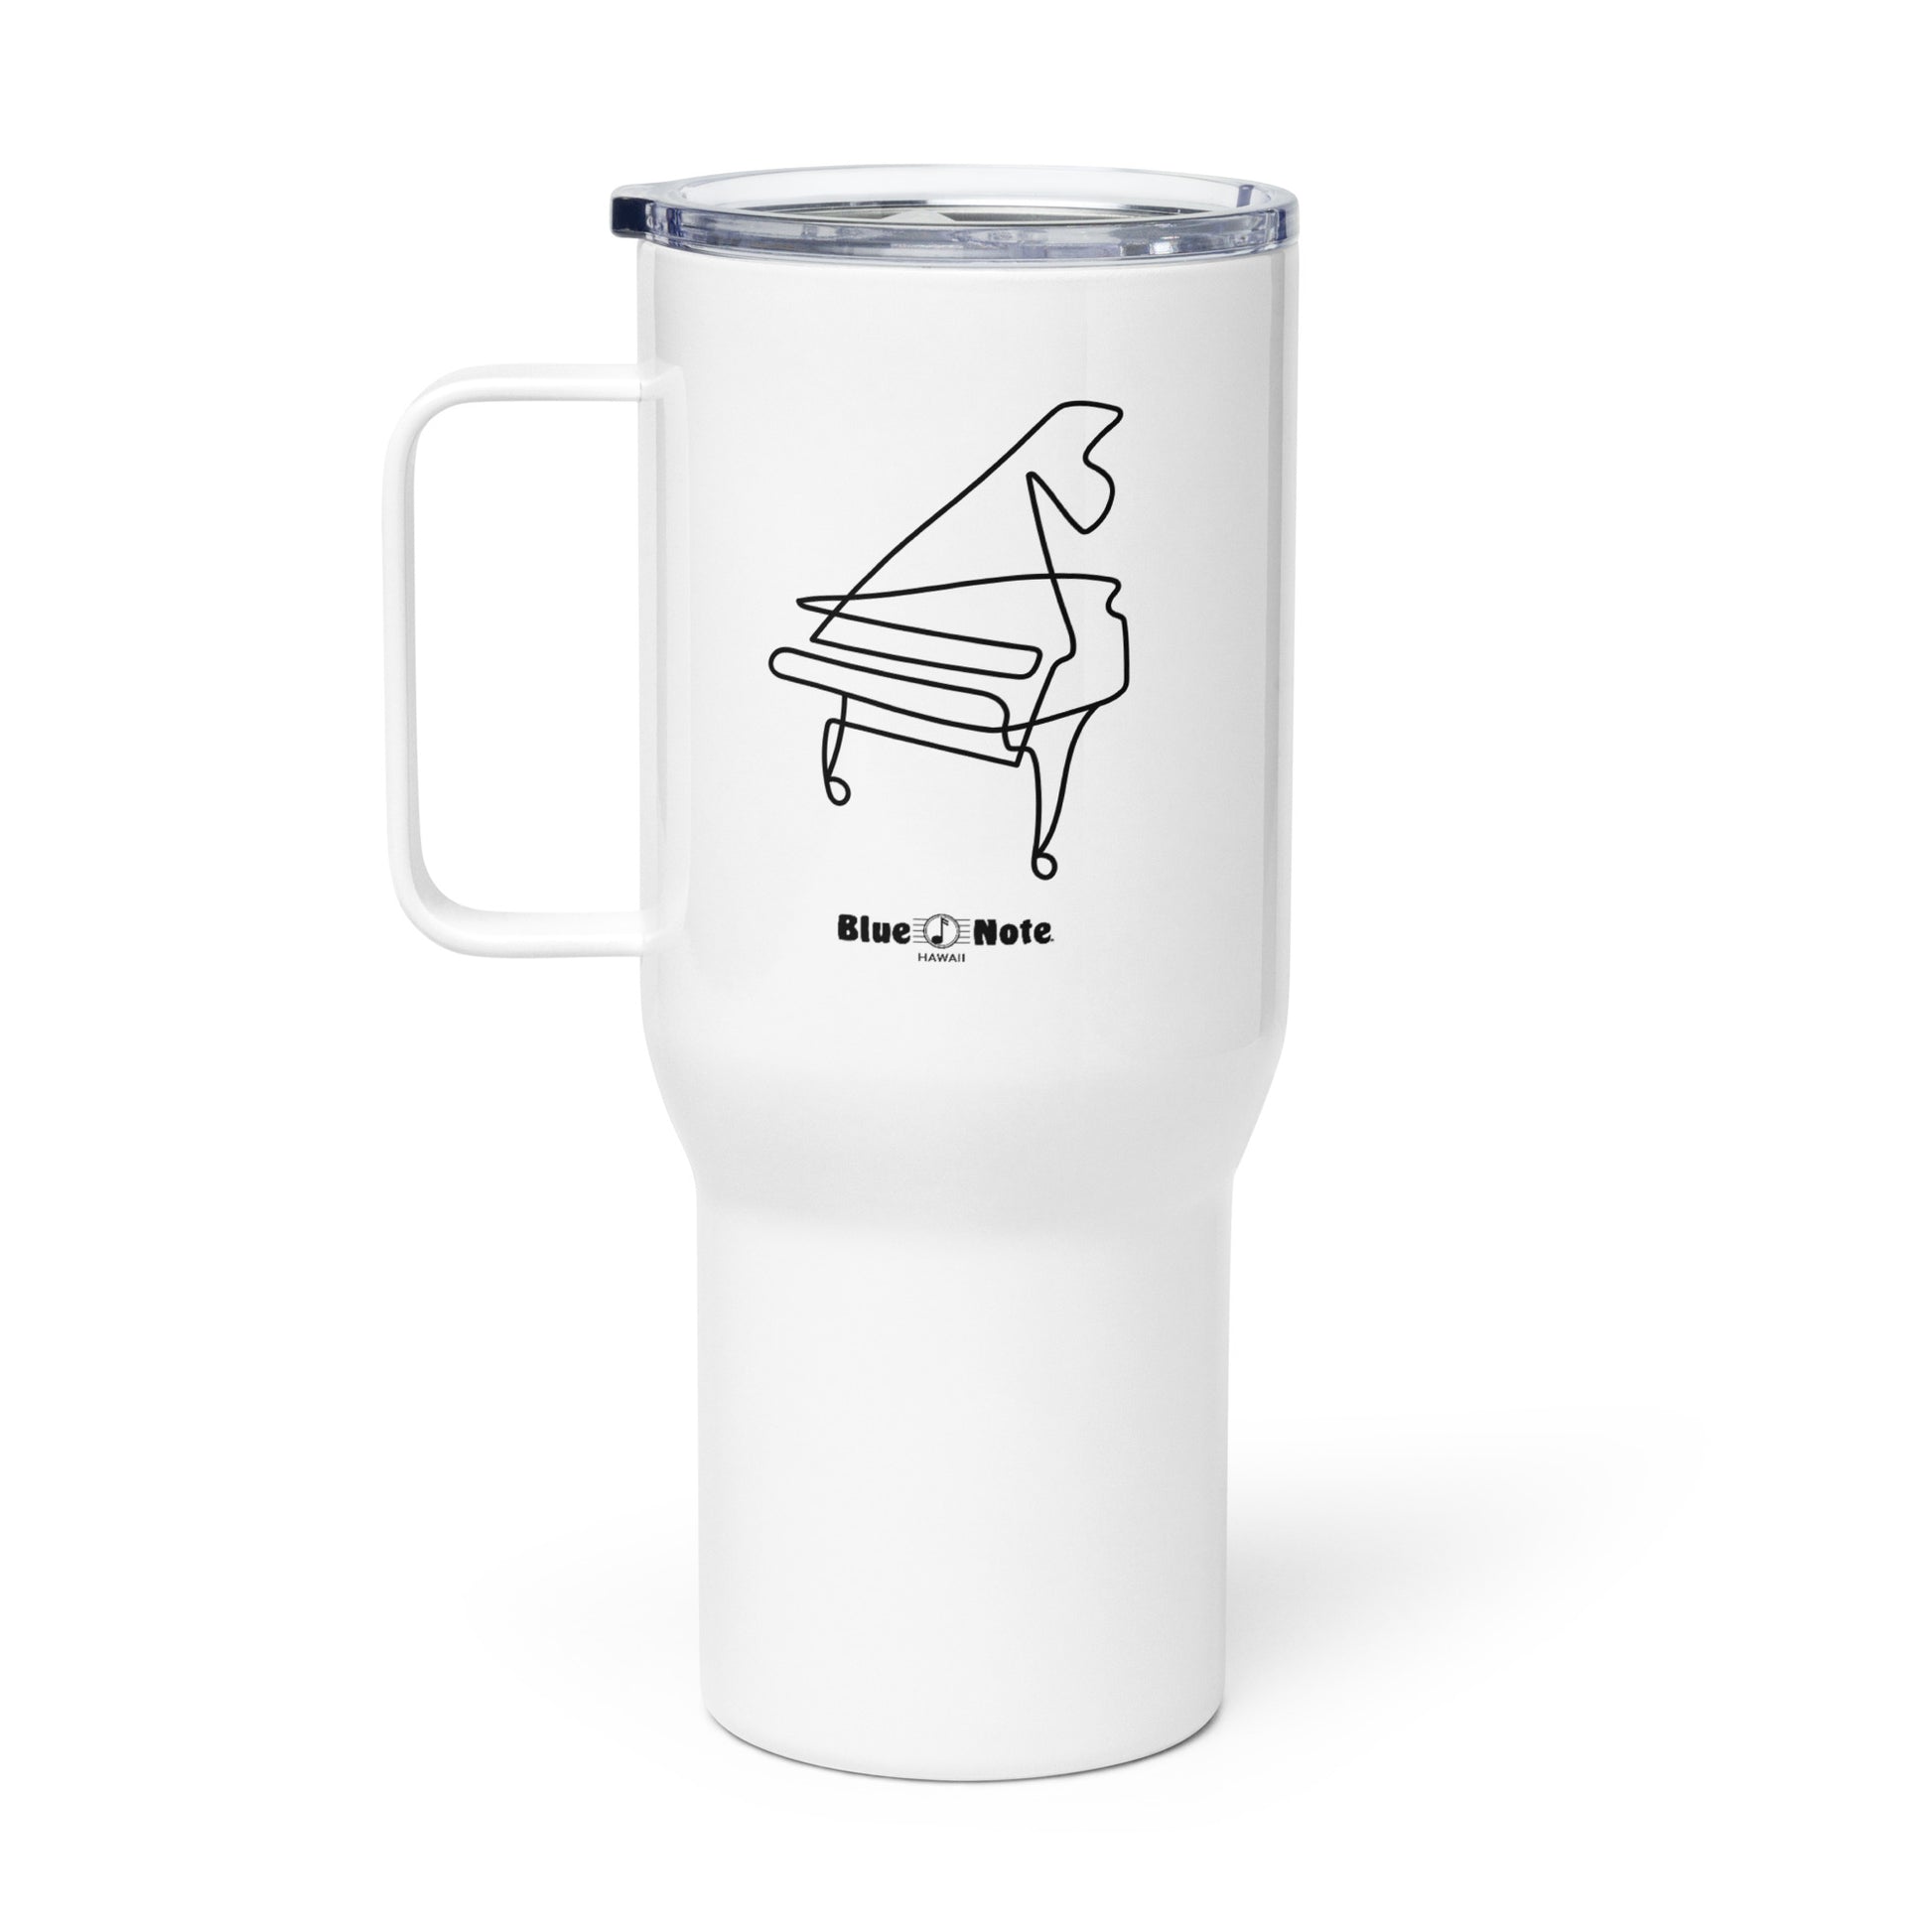 Blue Note Piano Sketch Travel Mug